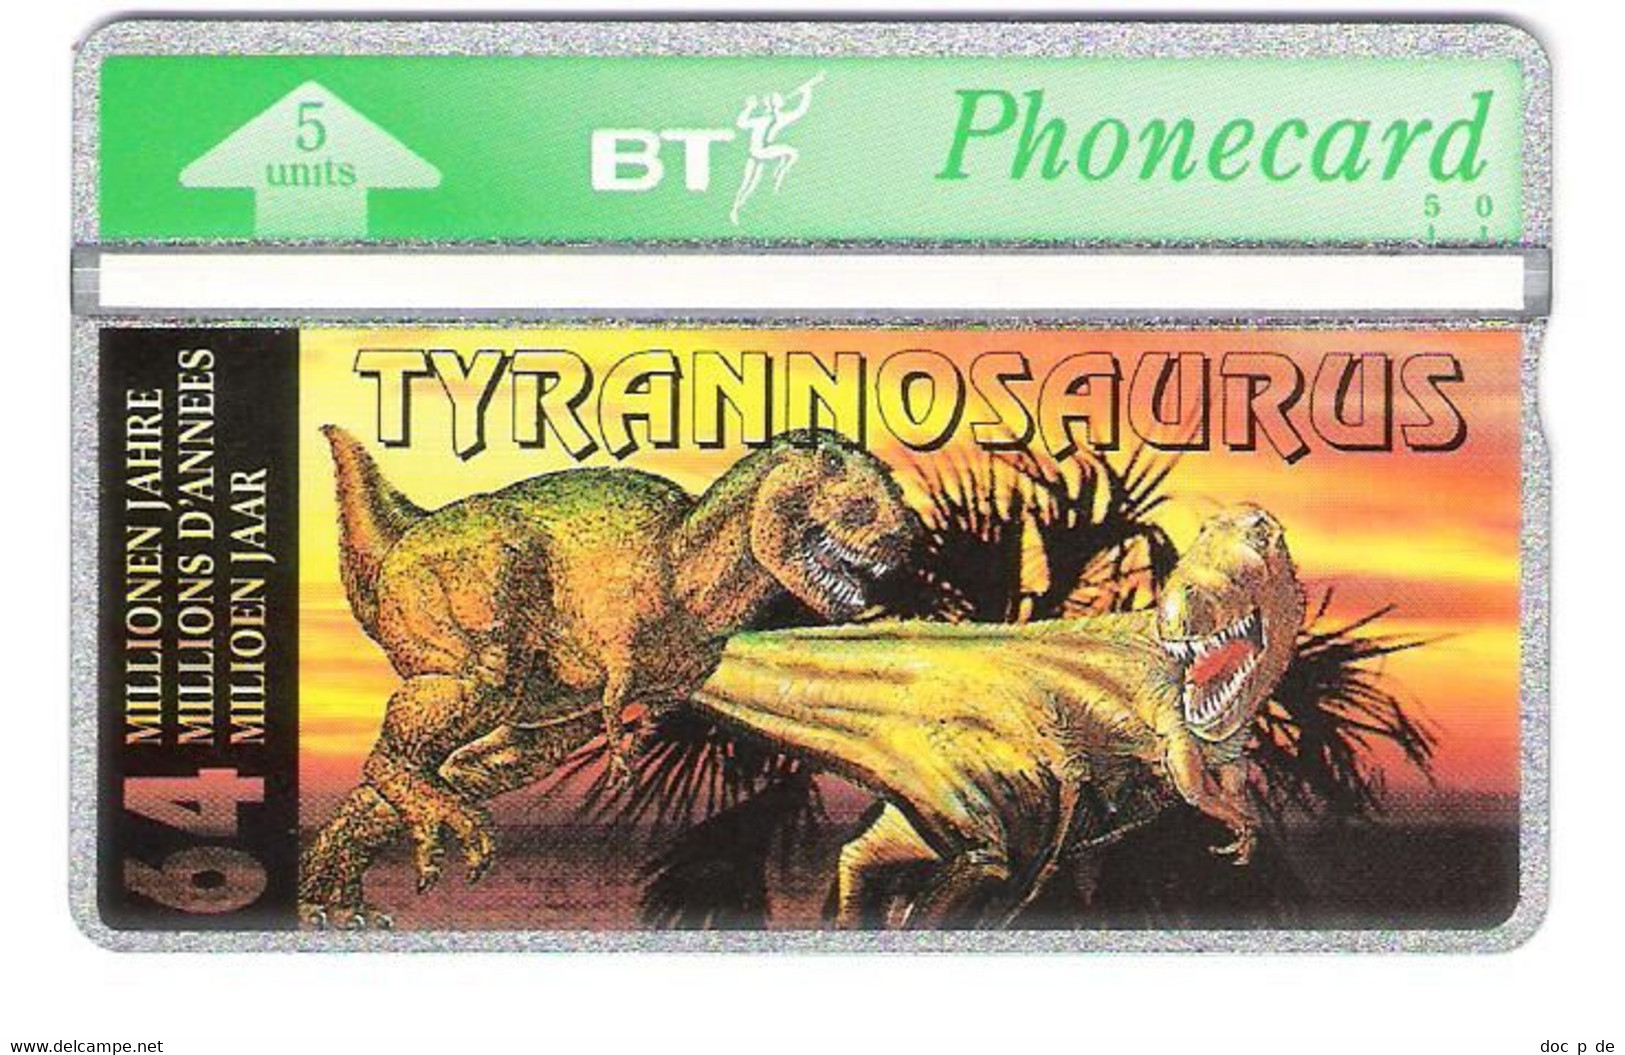 UK - BT L&G - Dinosaurs - Dino Saur - Tyrannosaurus - 310K - Mint - BT Edición Extranjera